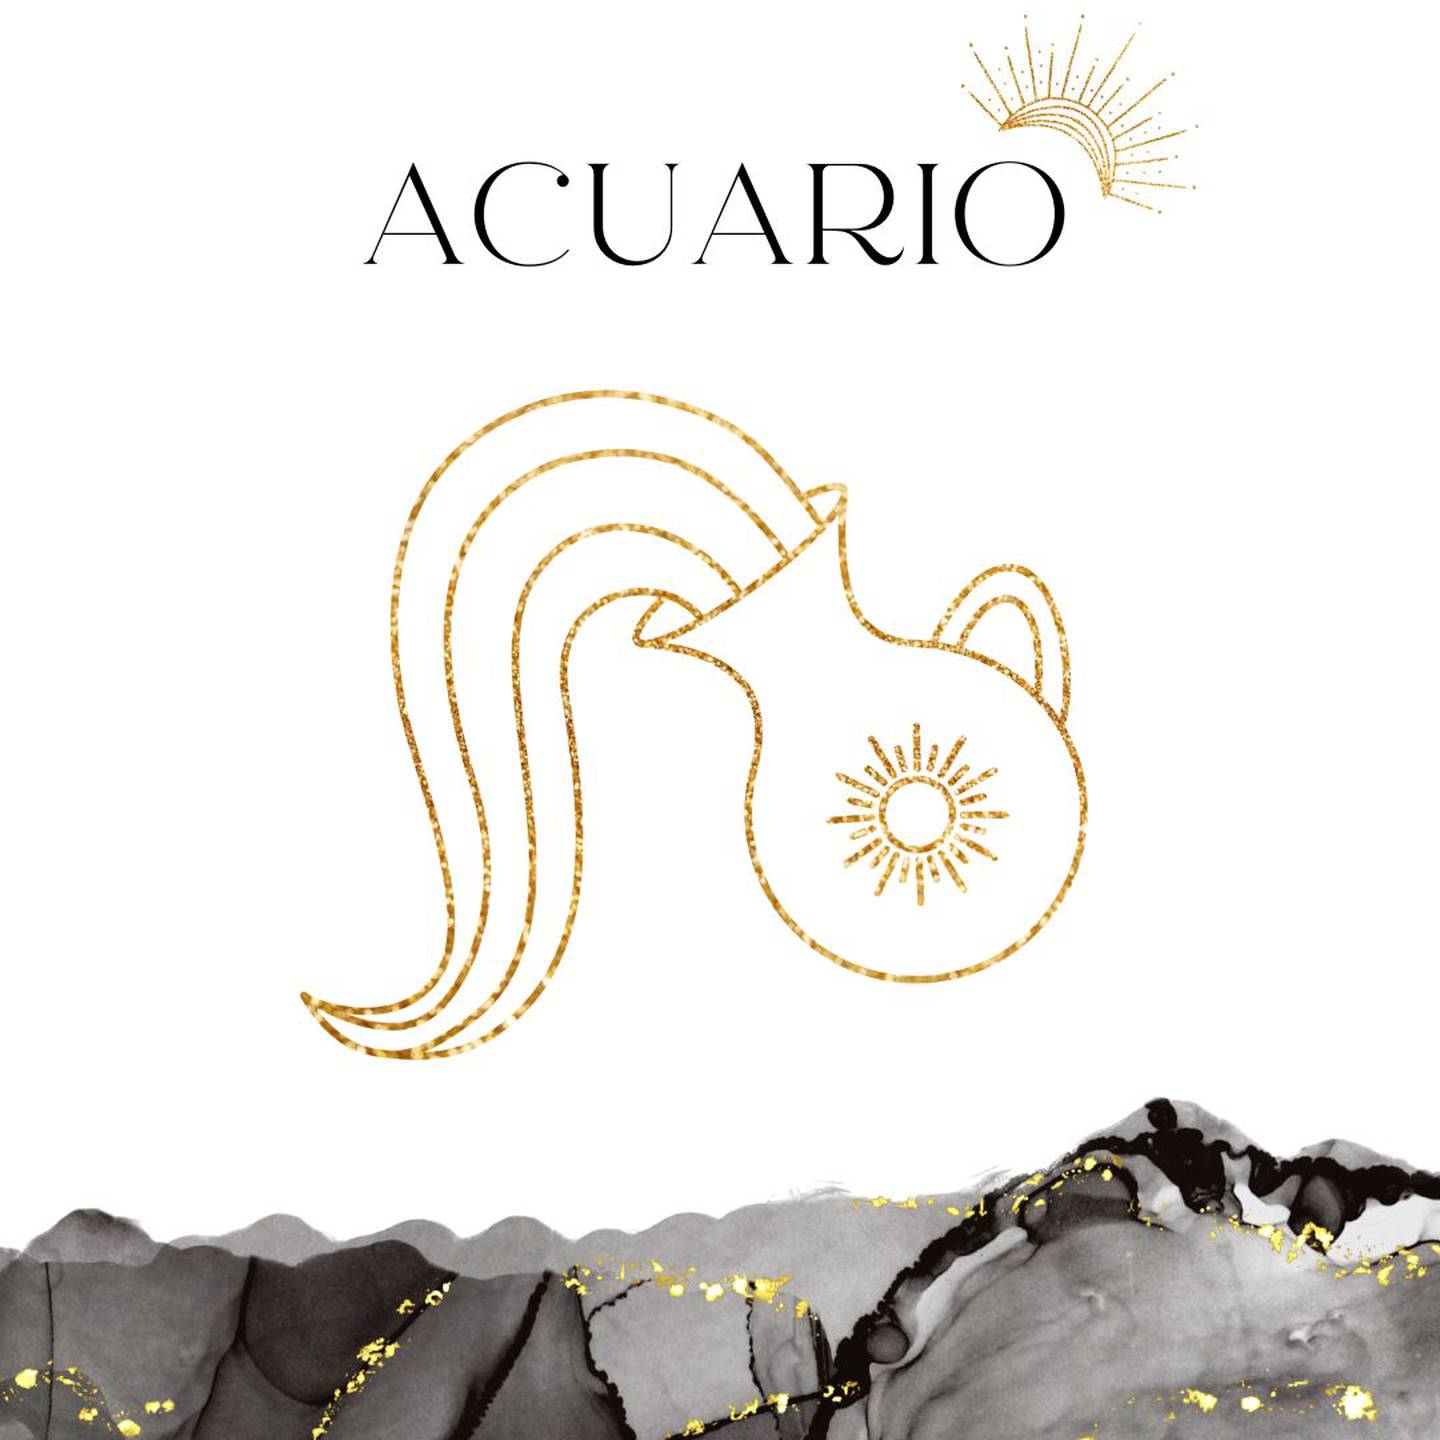 Palabra 'ACUARIO' en letras grandes y negras en el centro. Debajo, símbolo del signo de Acuario: un jarrón vertiendo agua en dorado.